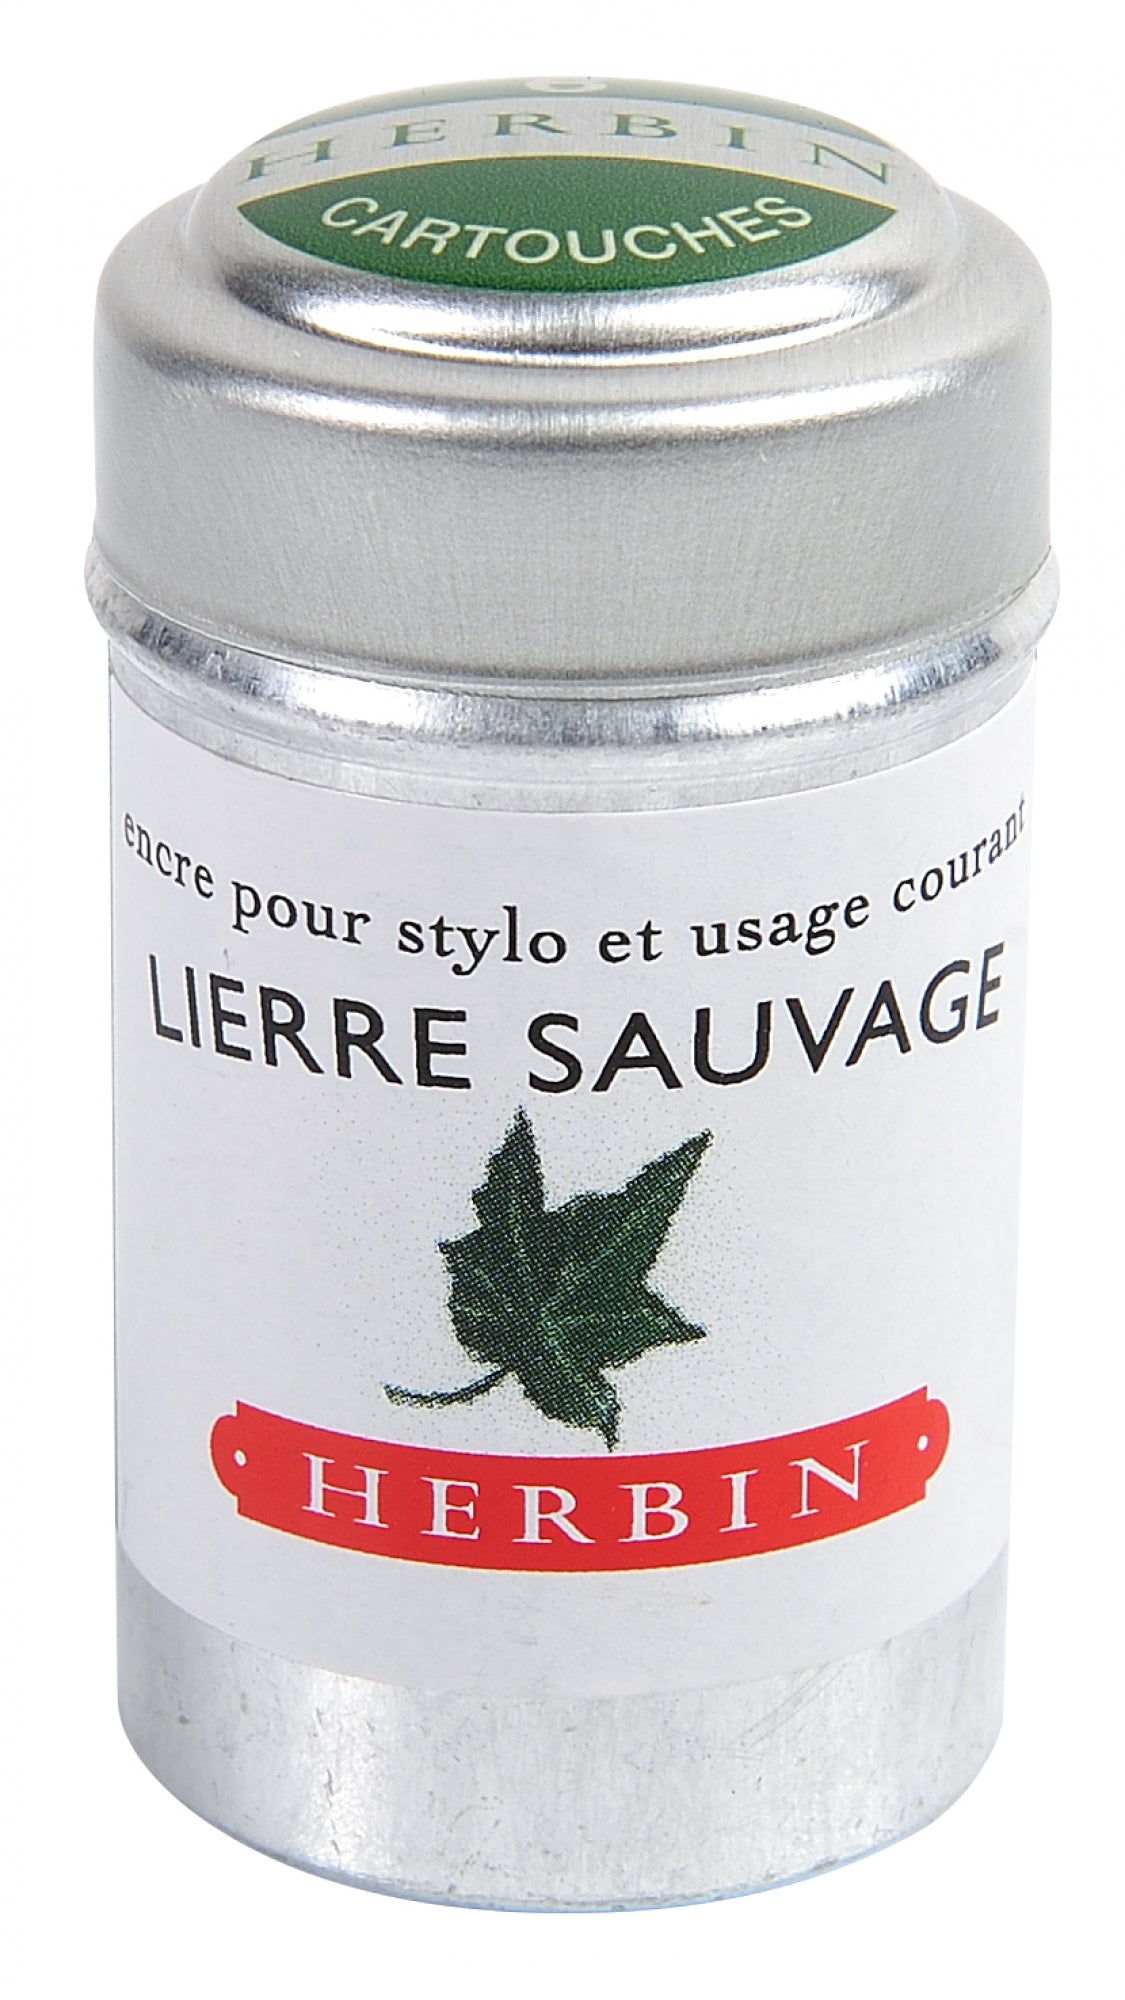 J Herbin Lierre Sauvage